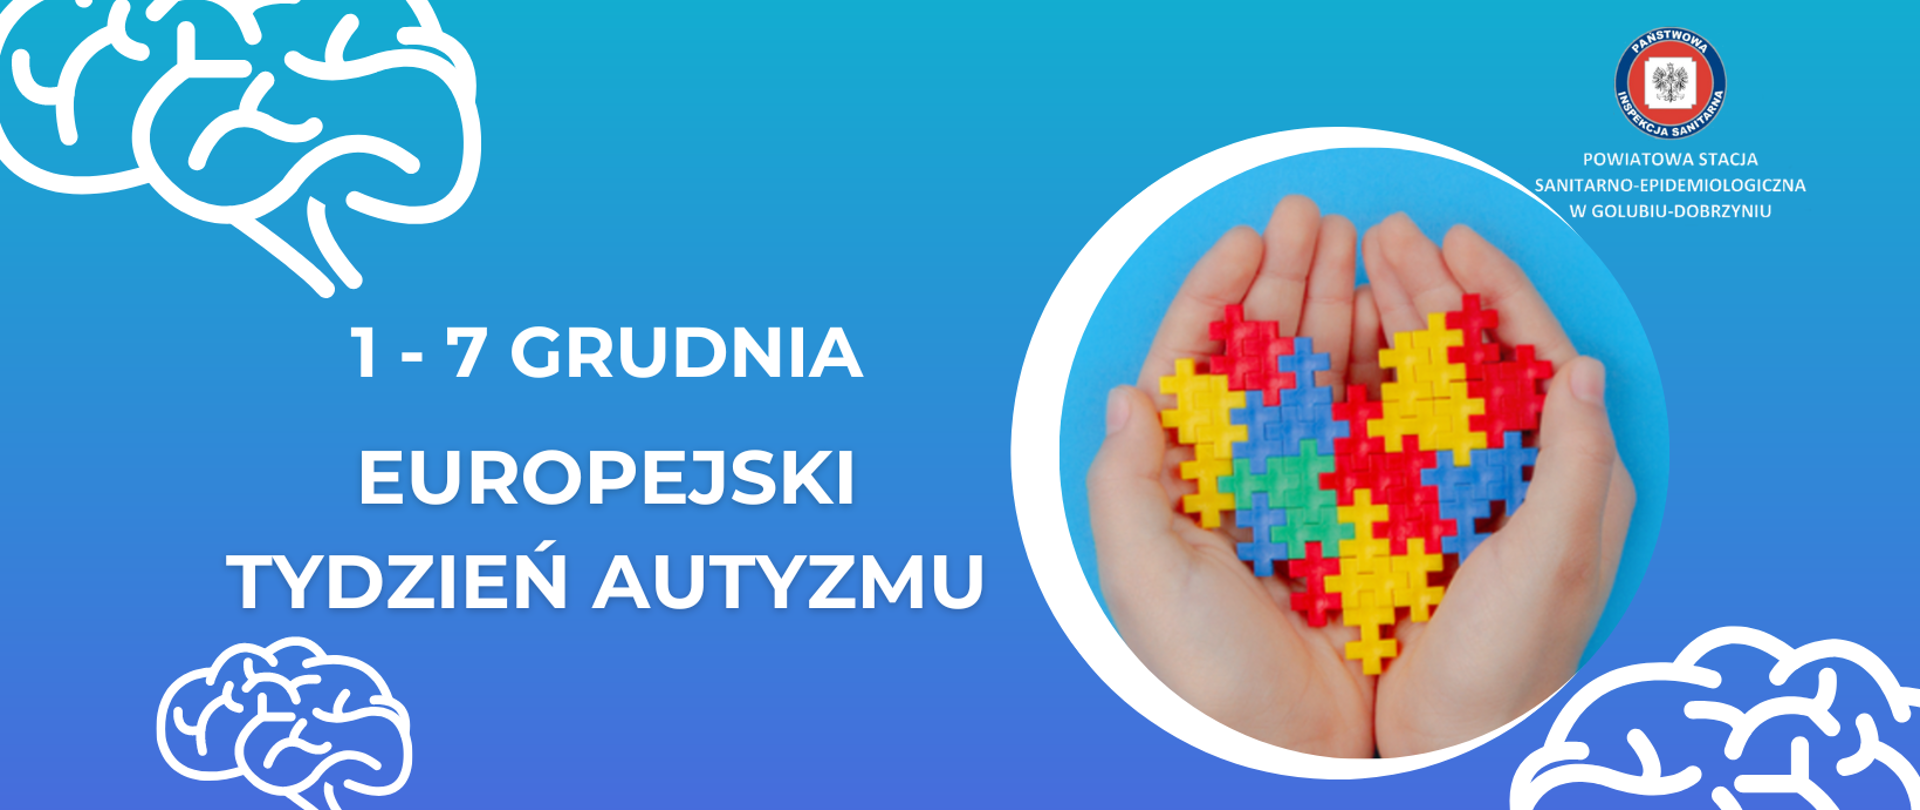 1-7 grudnia - Europejski Tydzień Autyzmu